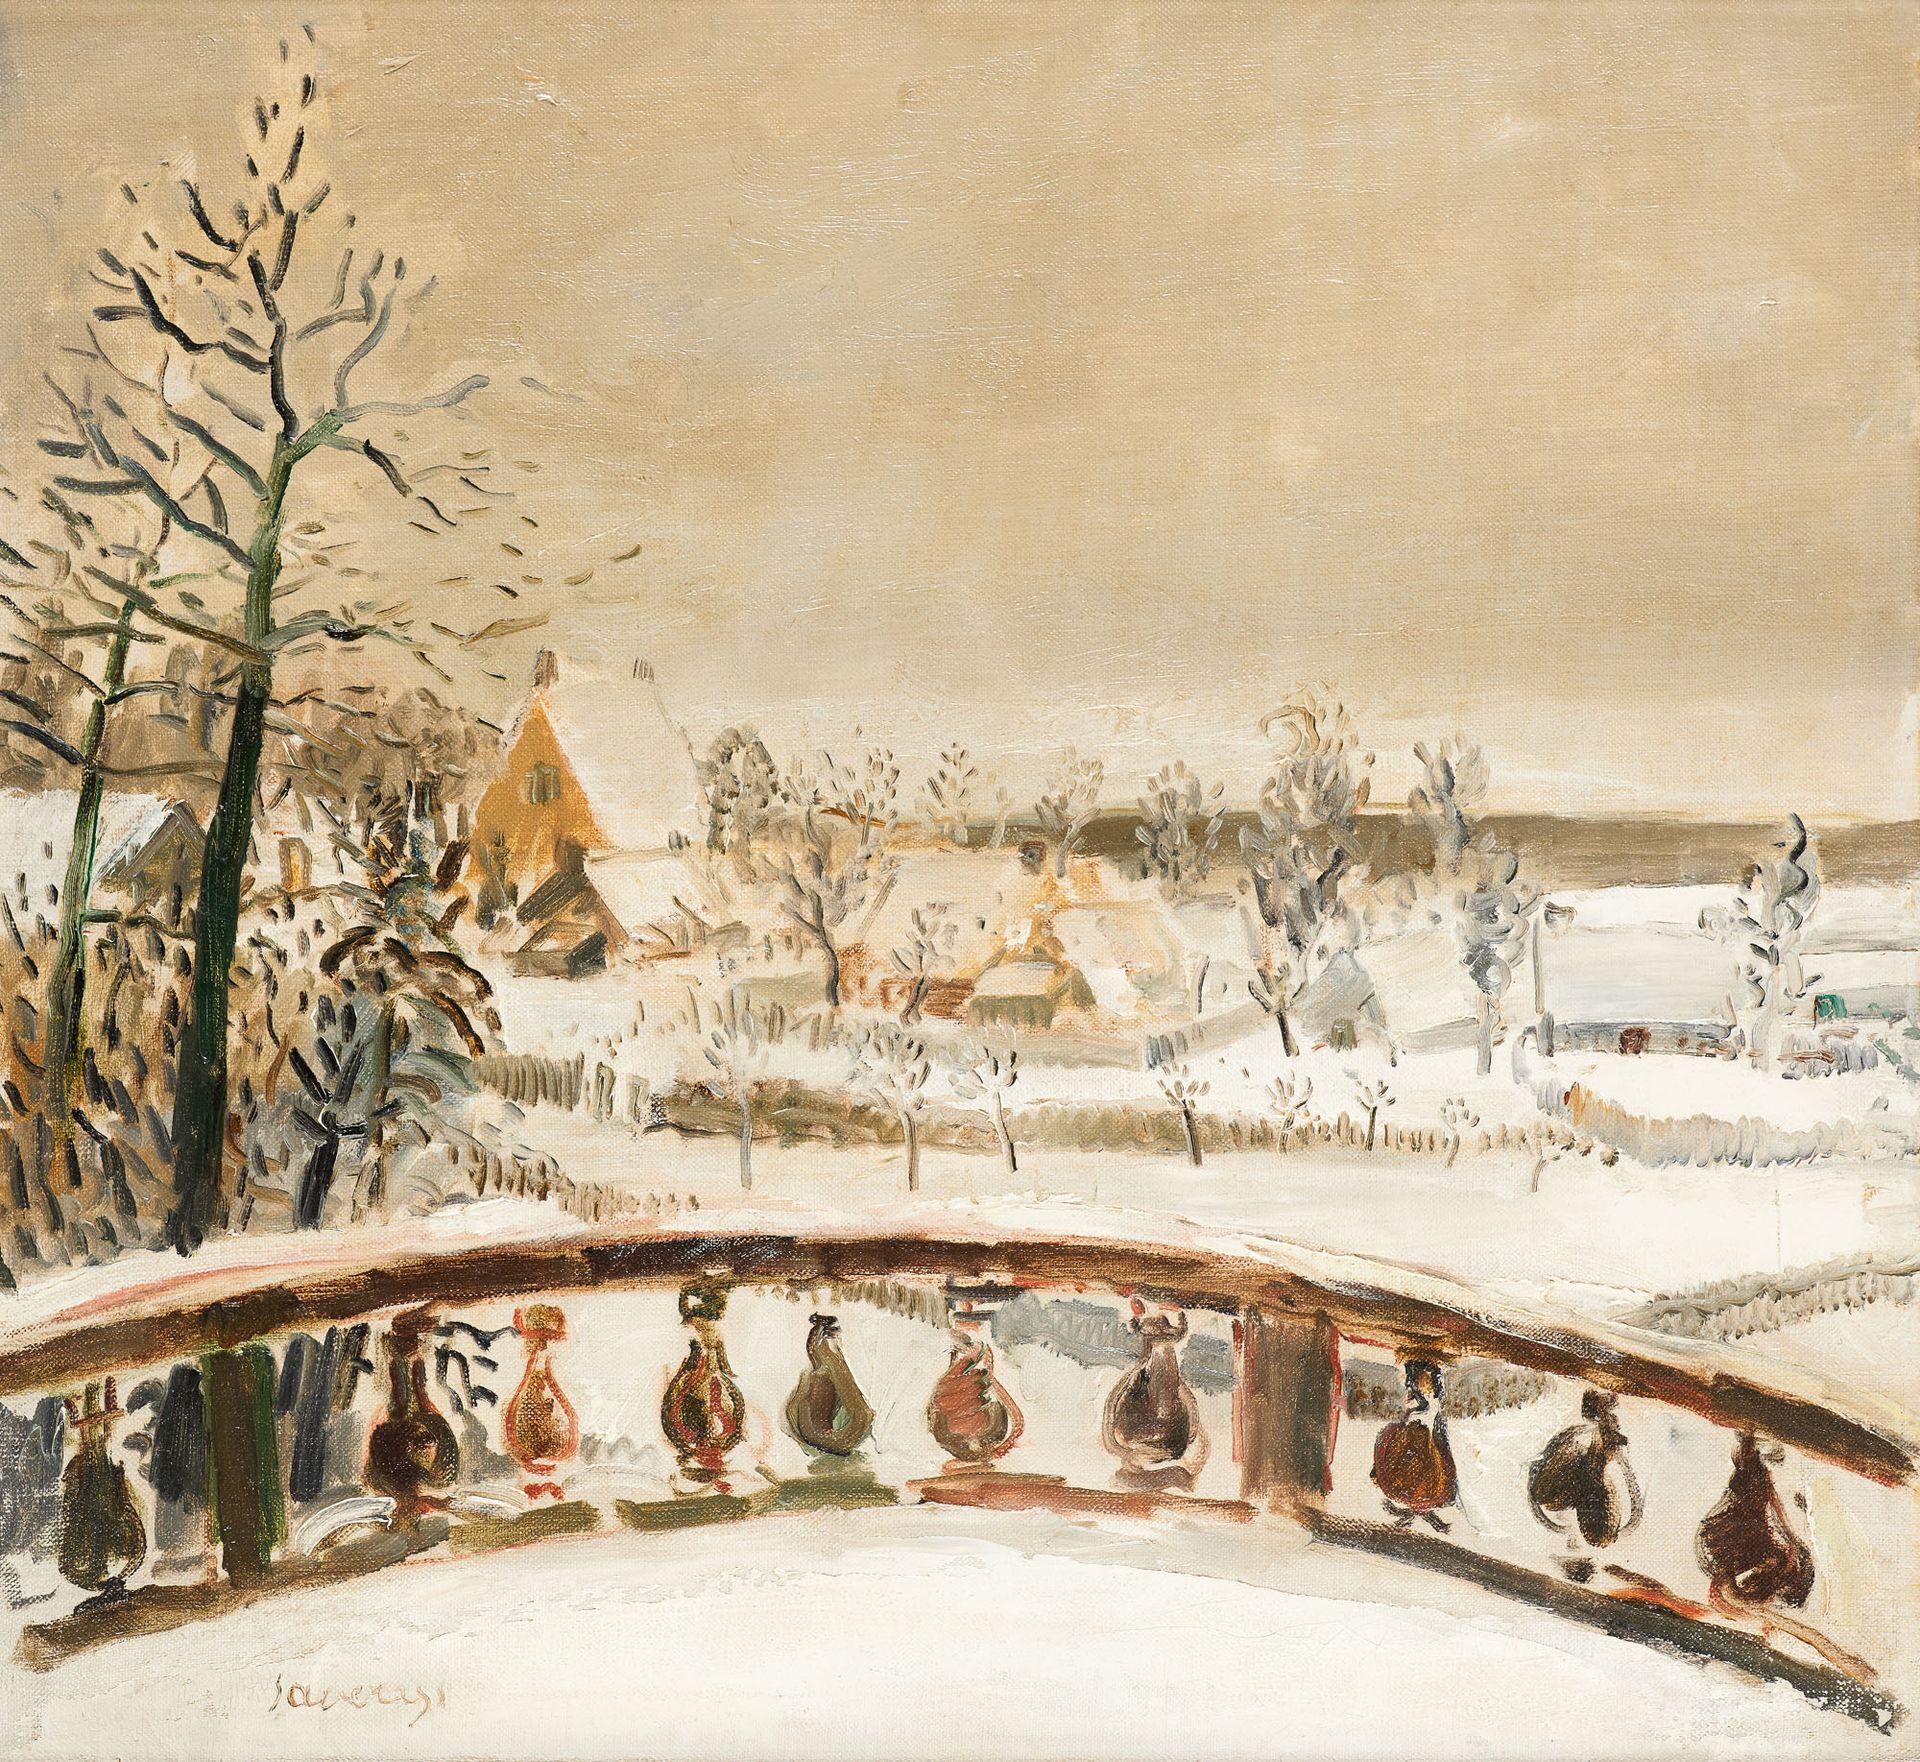 Albert SAVERYS École belge (1886-1964) Öl auf Leinwand: Der Garten im Schnee.

S&hellip;